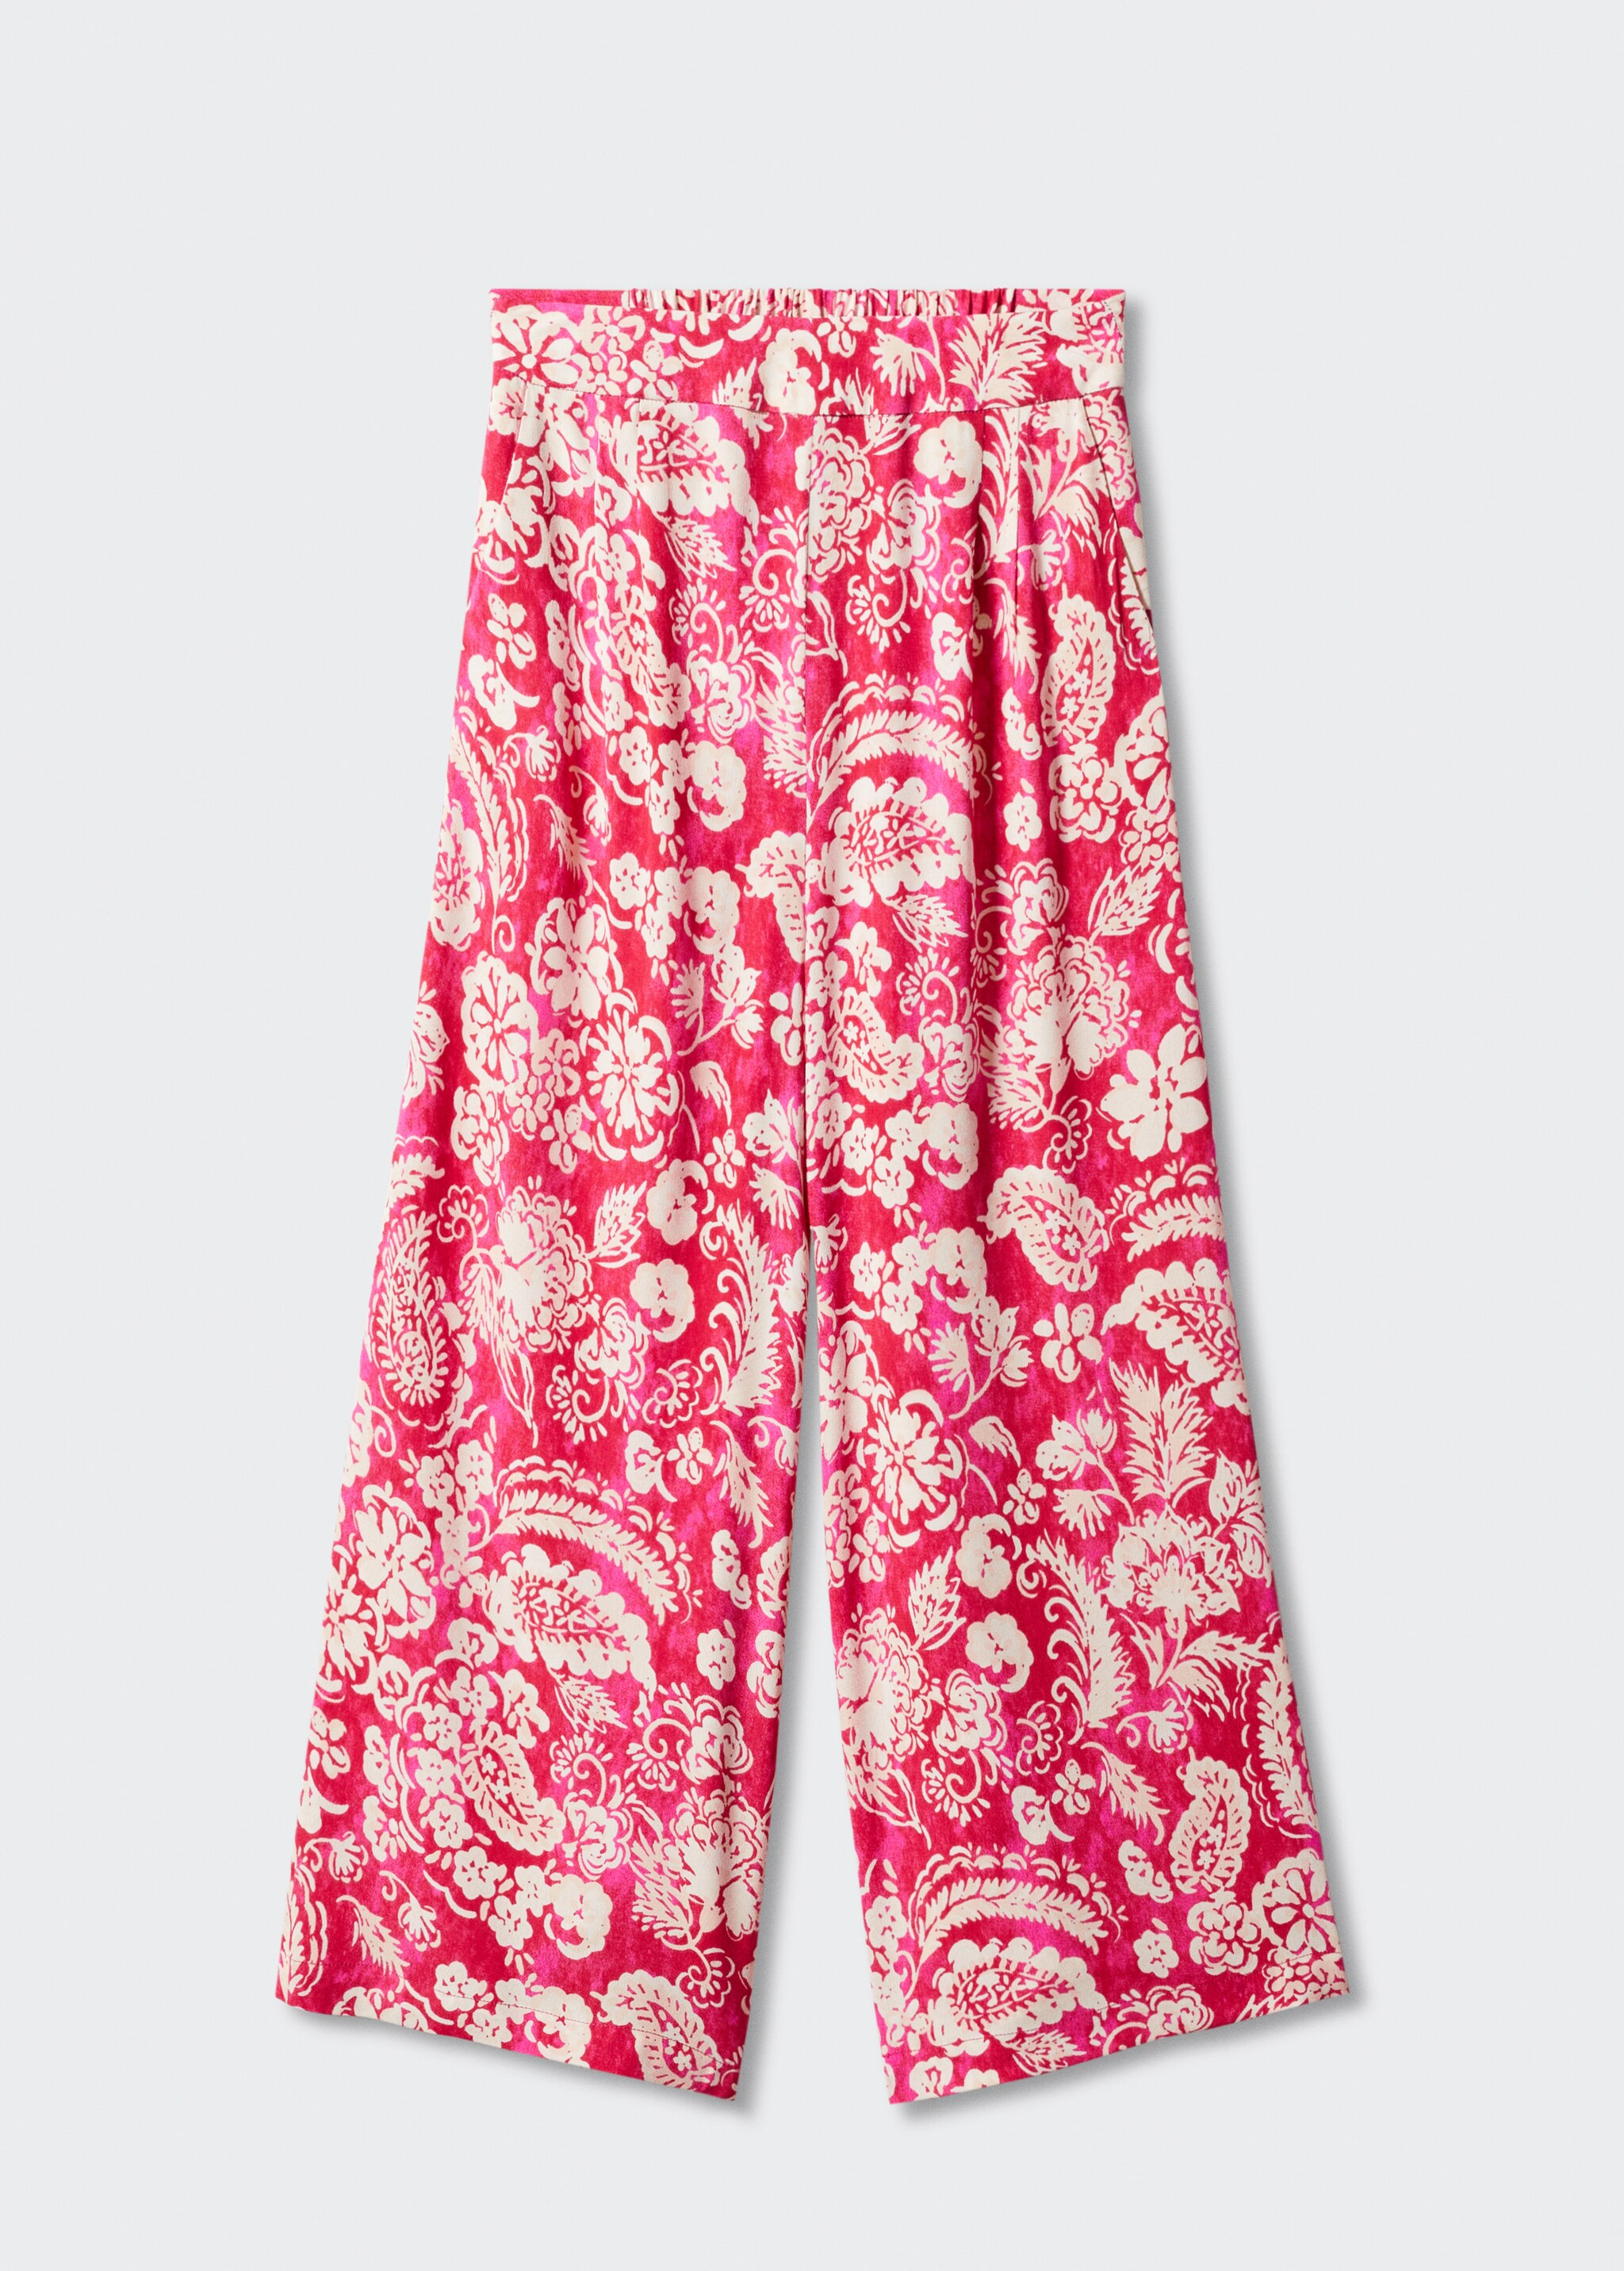 Pantalón culotte estampado floral - Artículo sin modelo